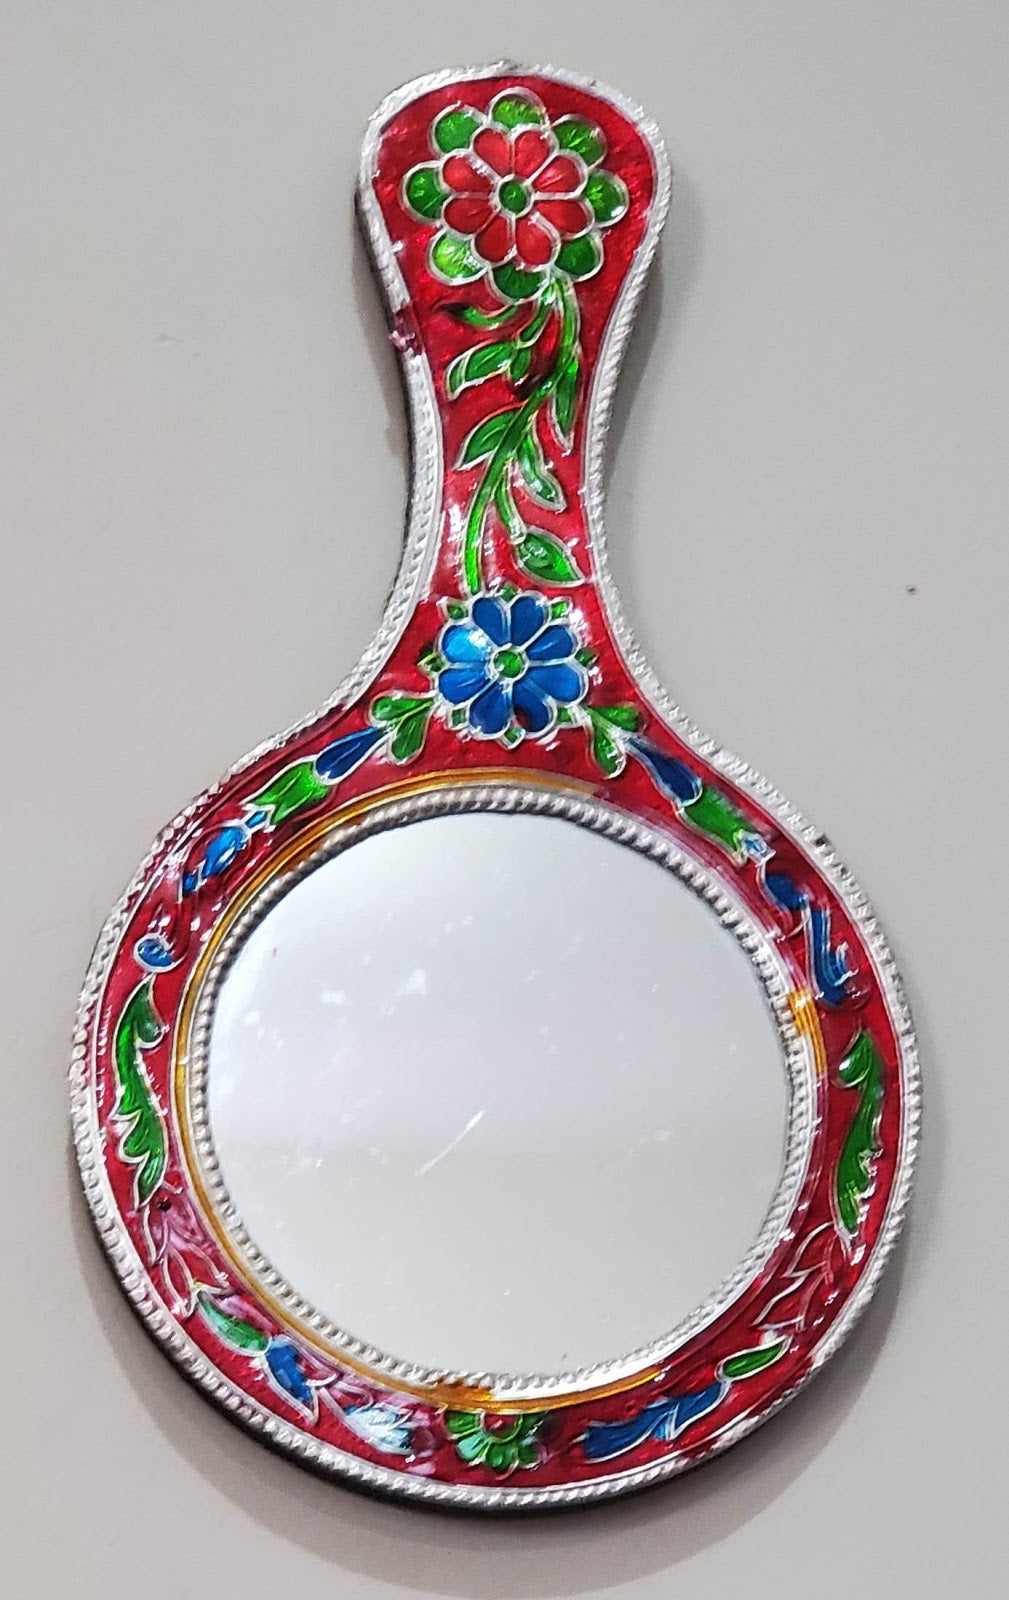 Meenakari Hand Mirror